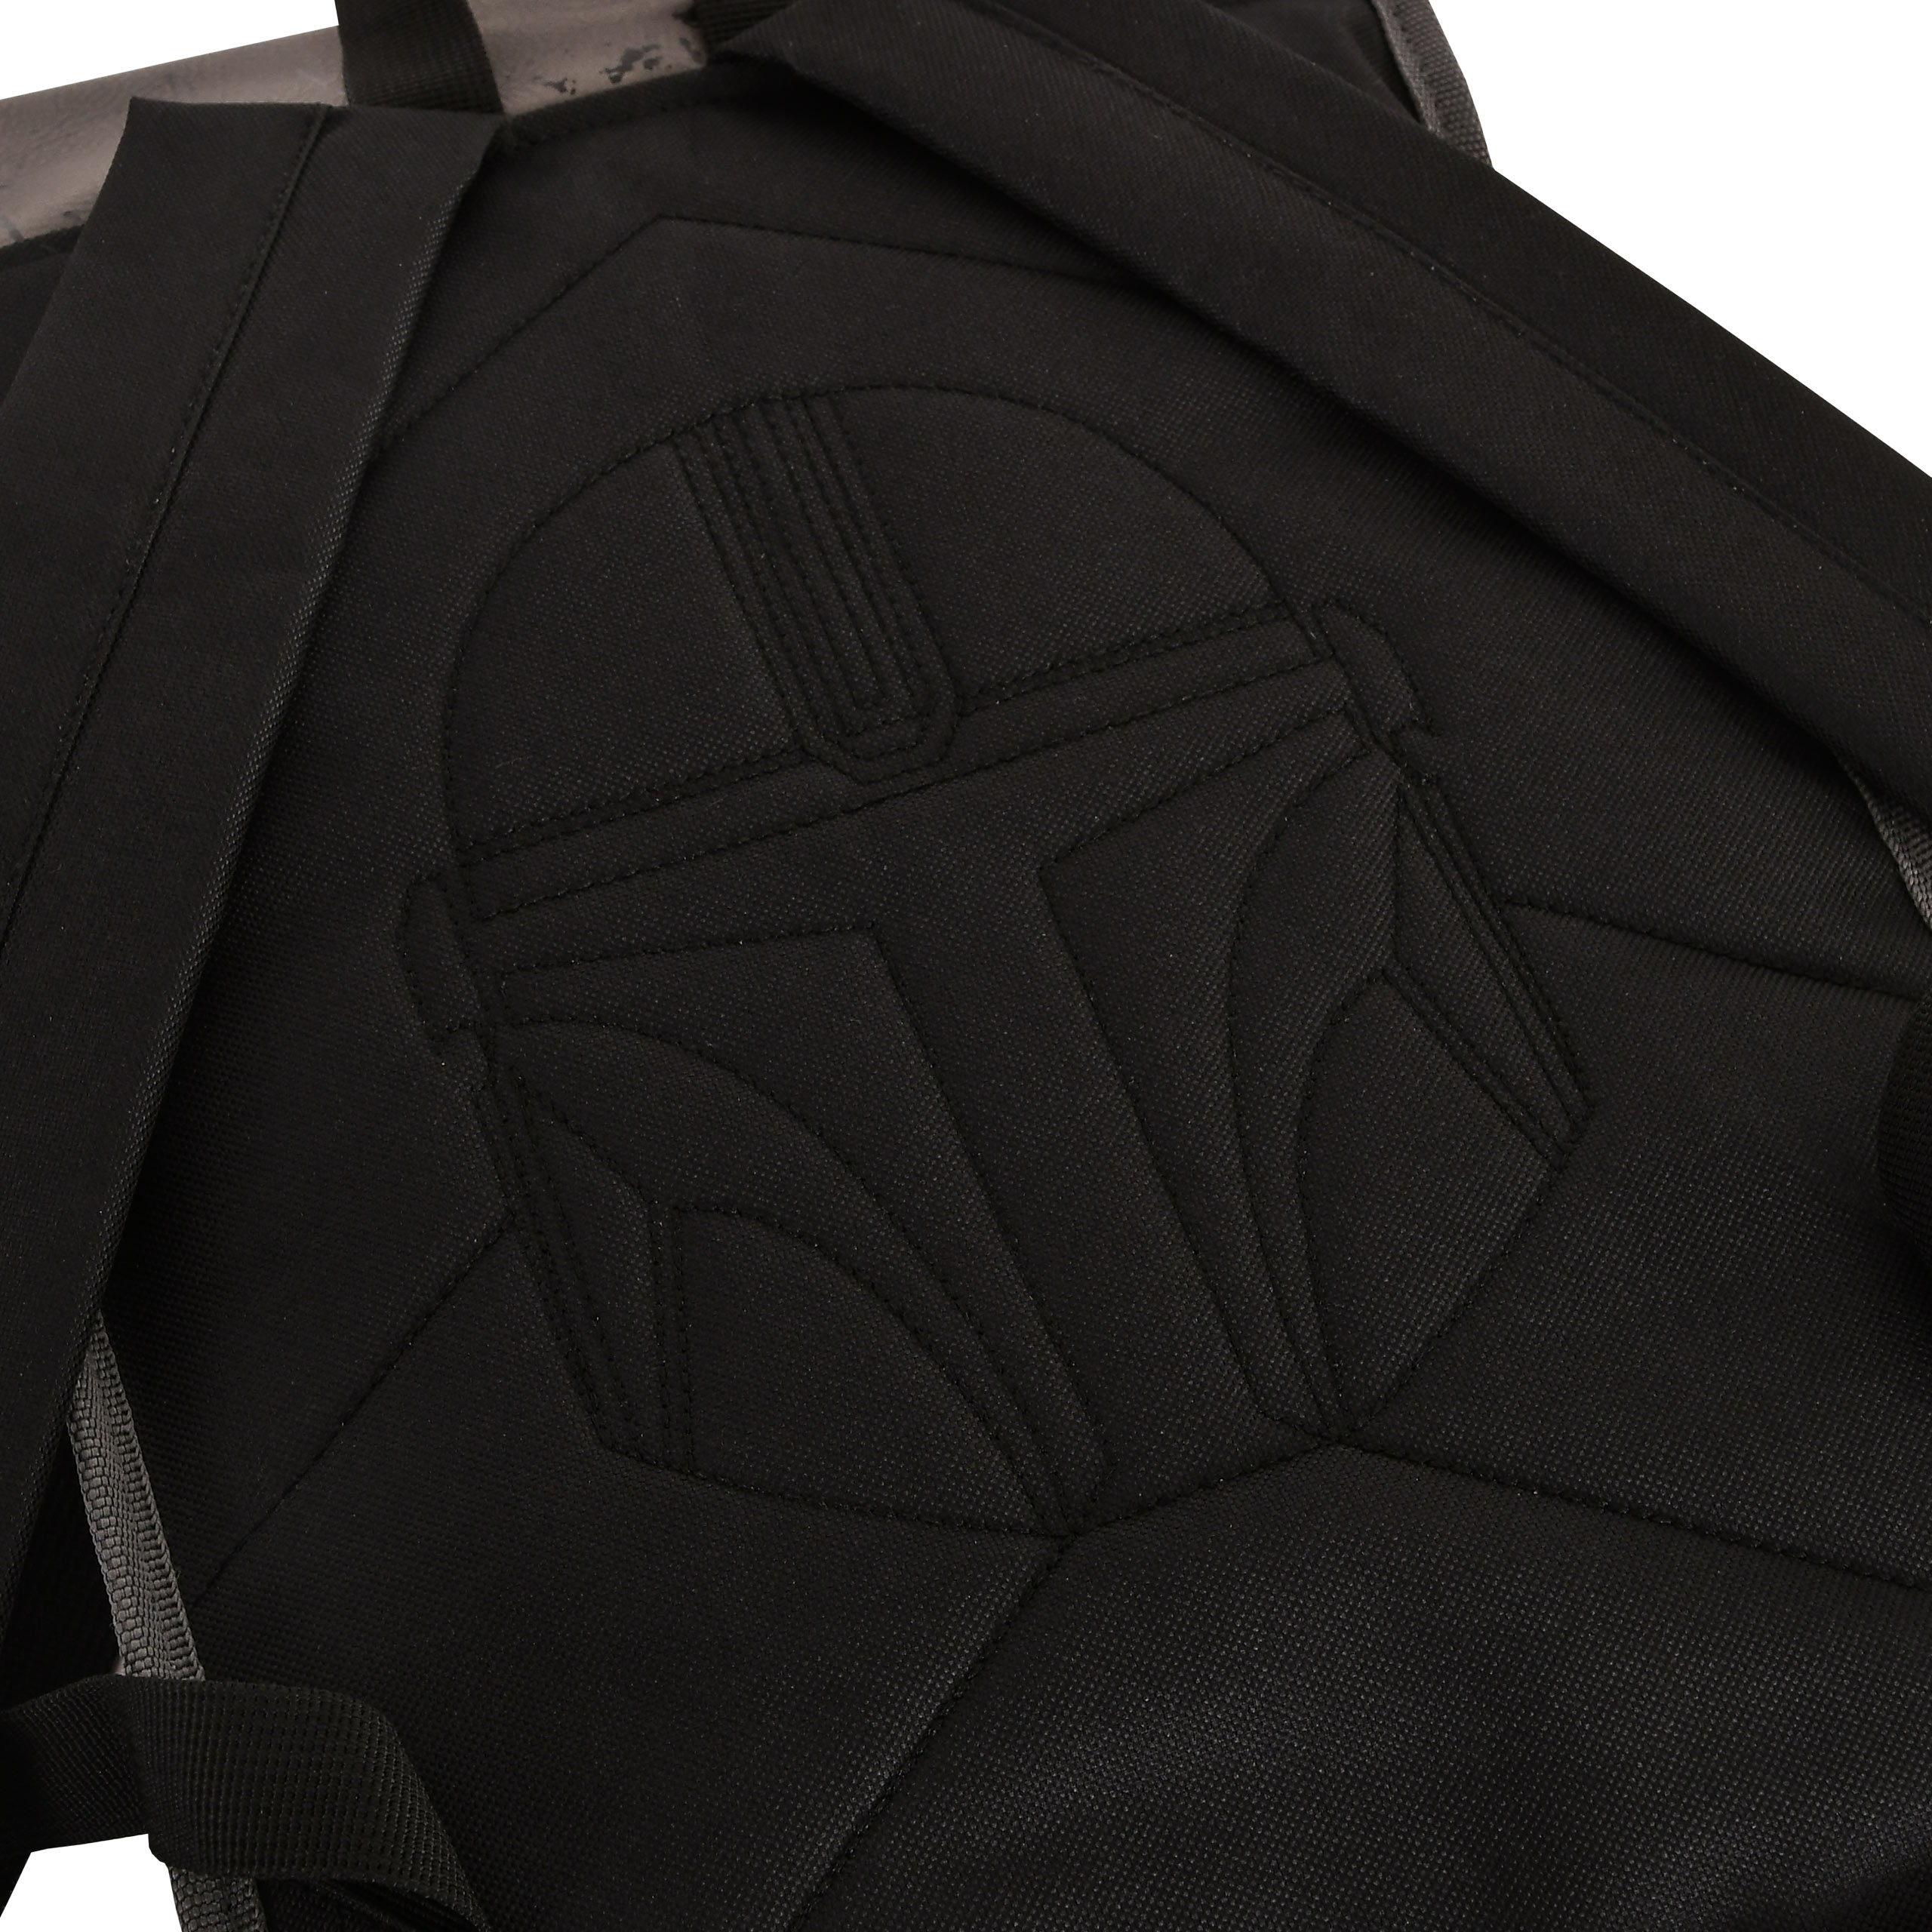 Mandalorian Helmet Backpack - Star Wars The Mandalorian